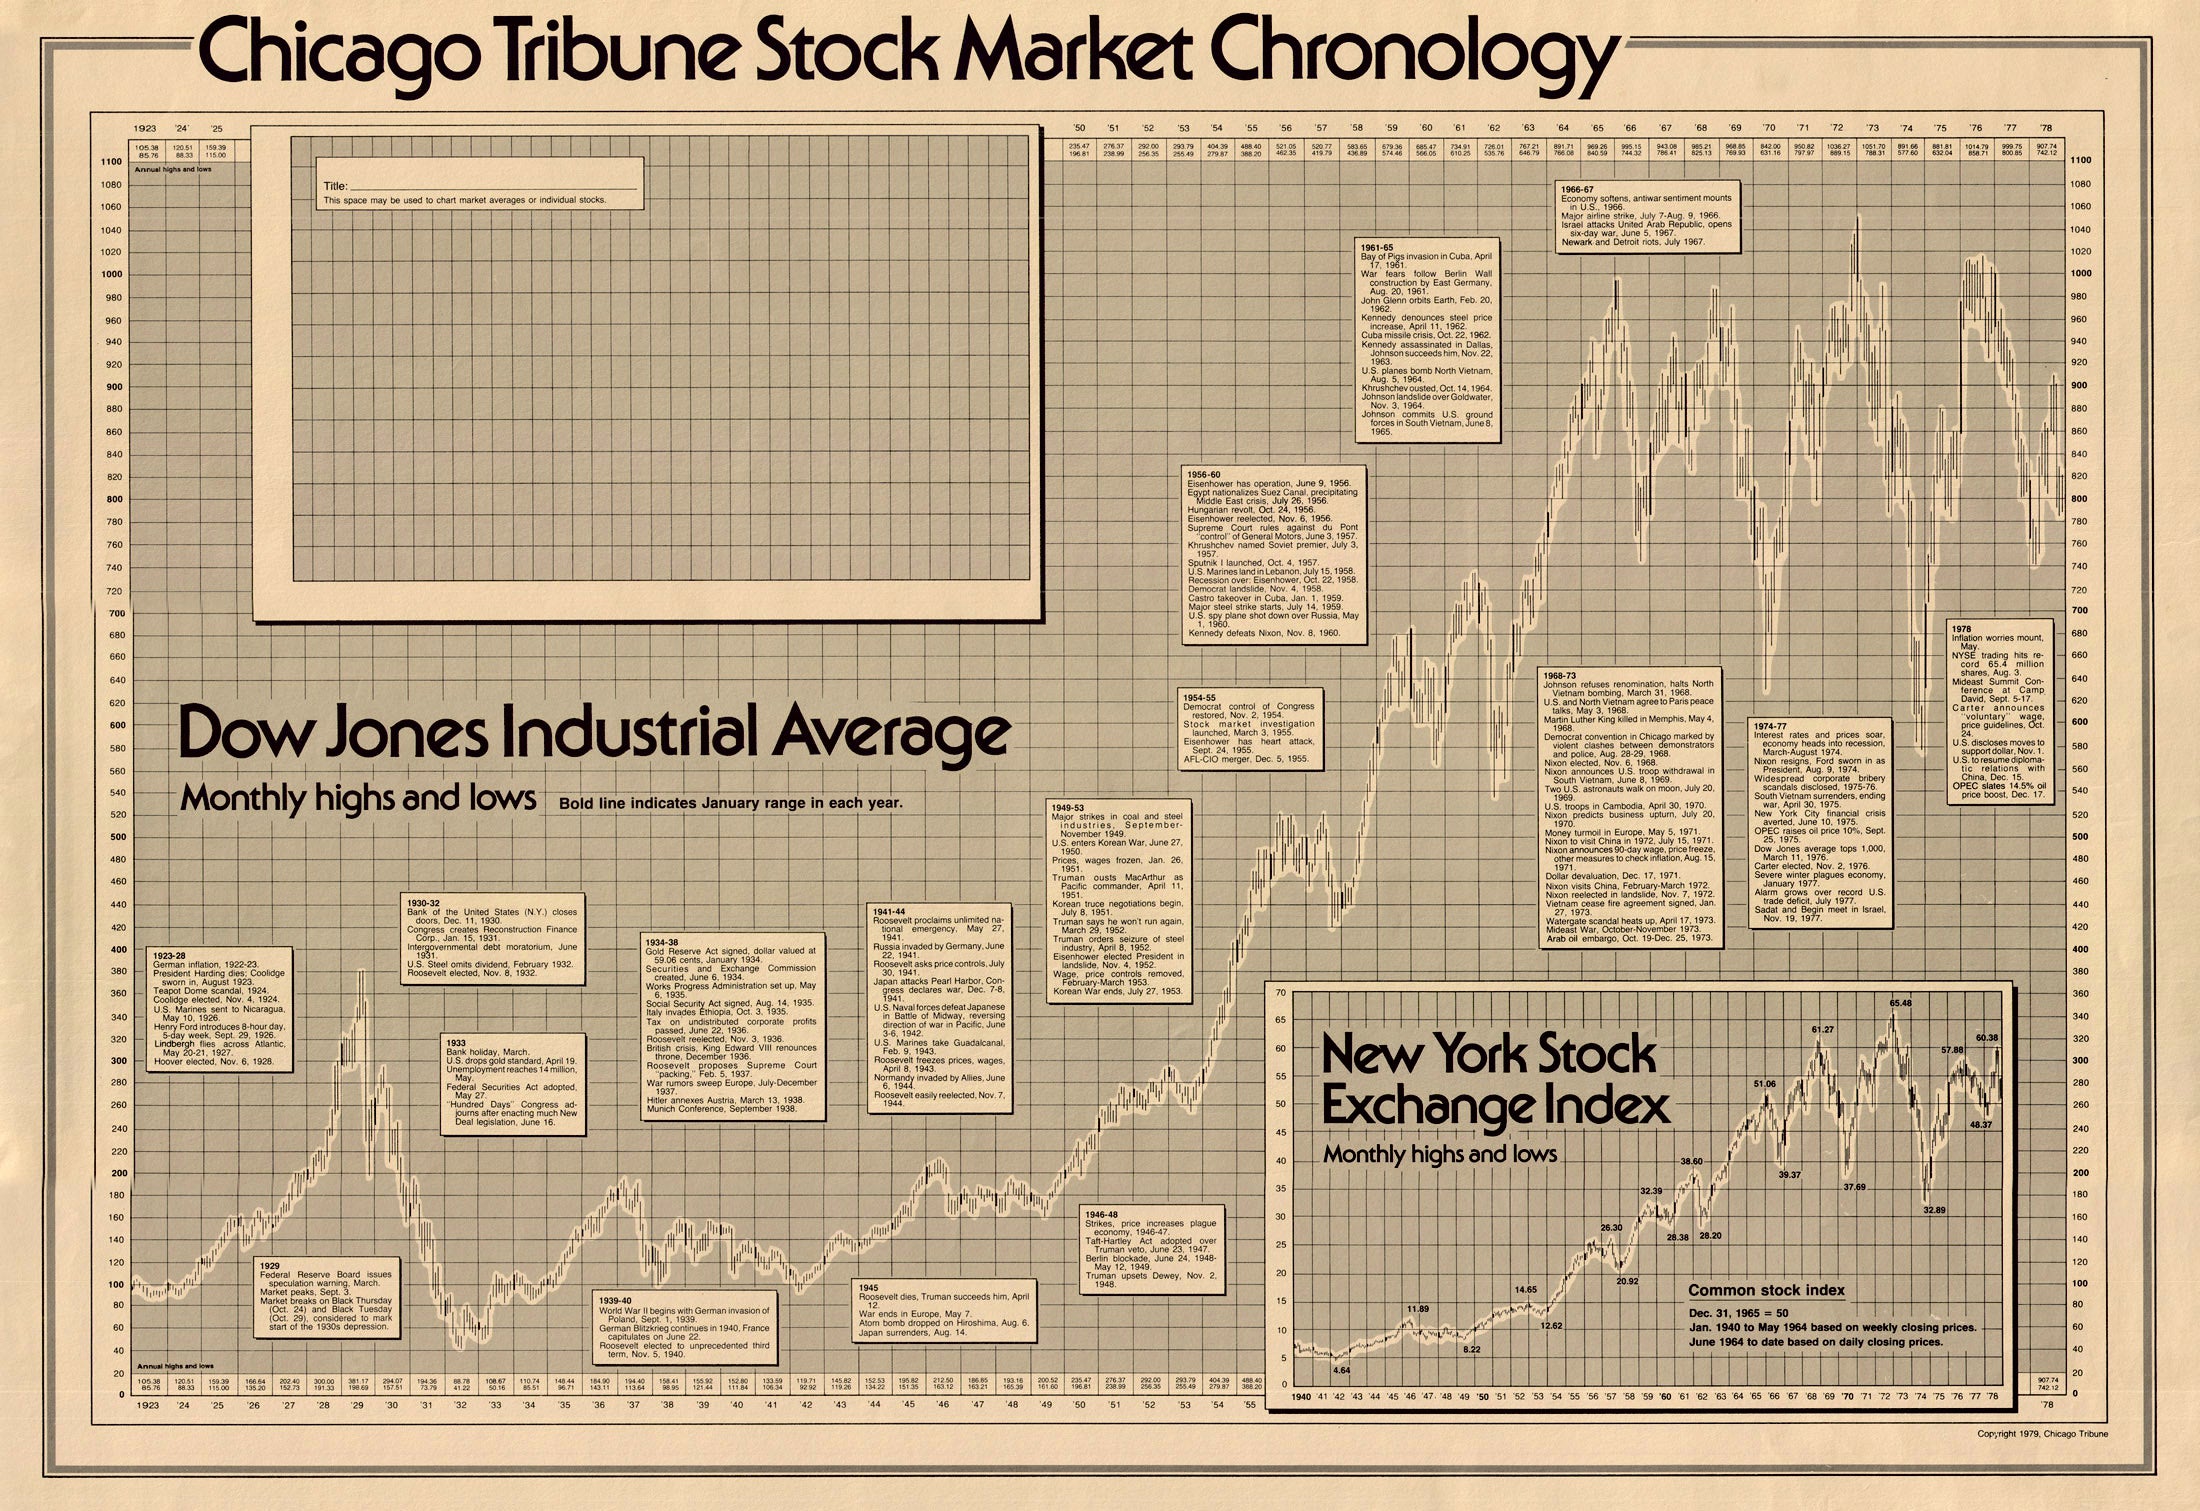 (Thematic - Economics) Chicago Tribune Stock Market Chronology